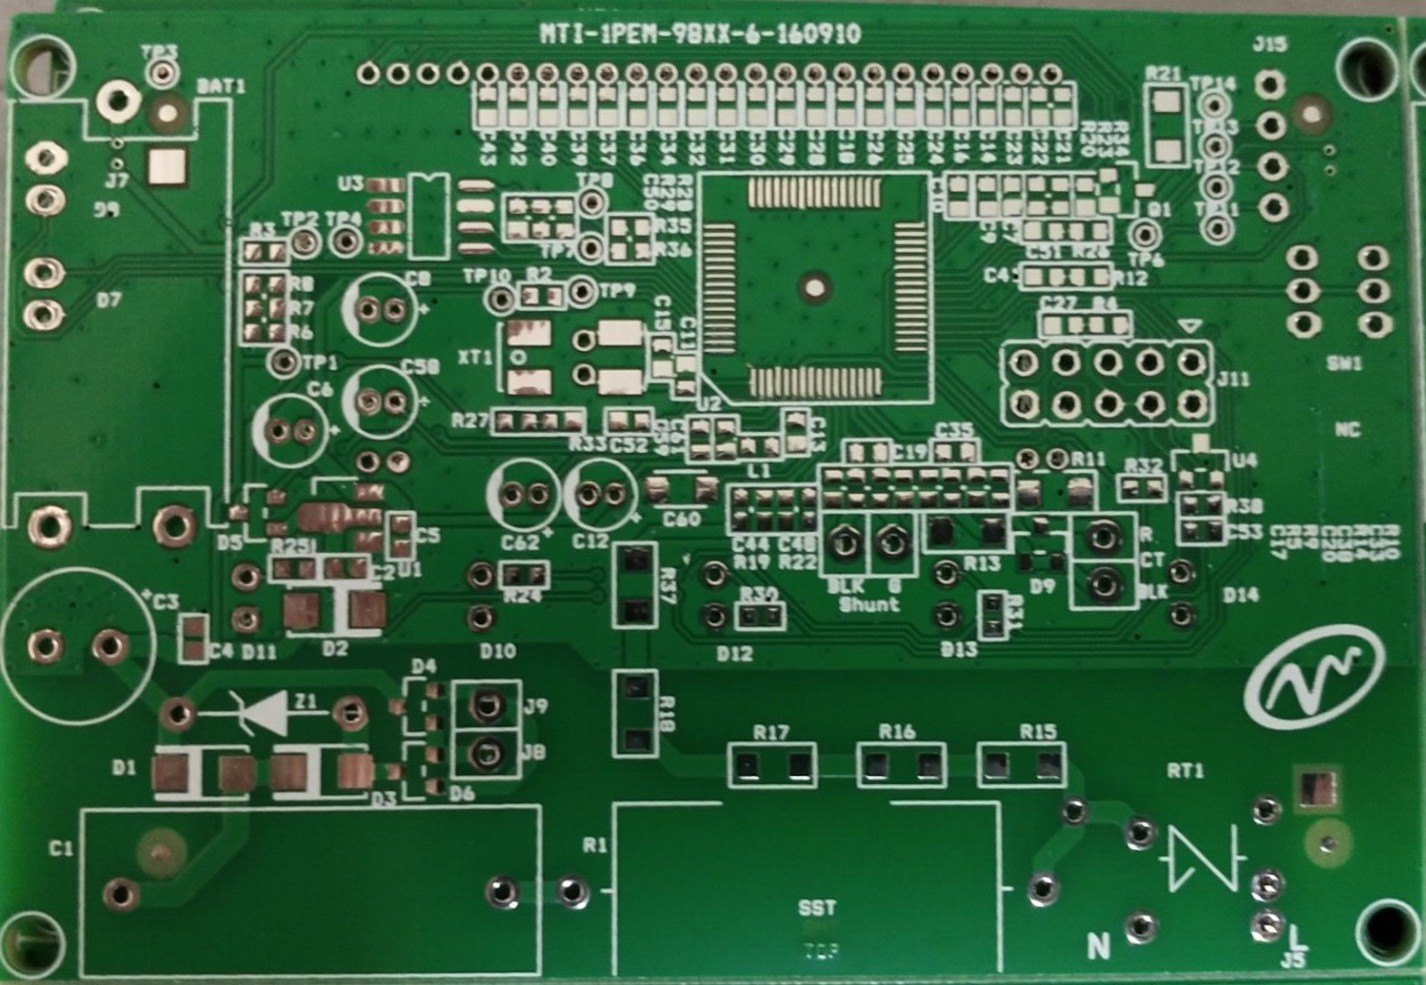 PCB MTI-1PEM-98XX-6-160910